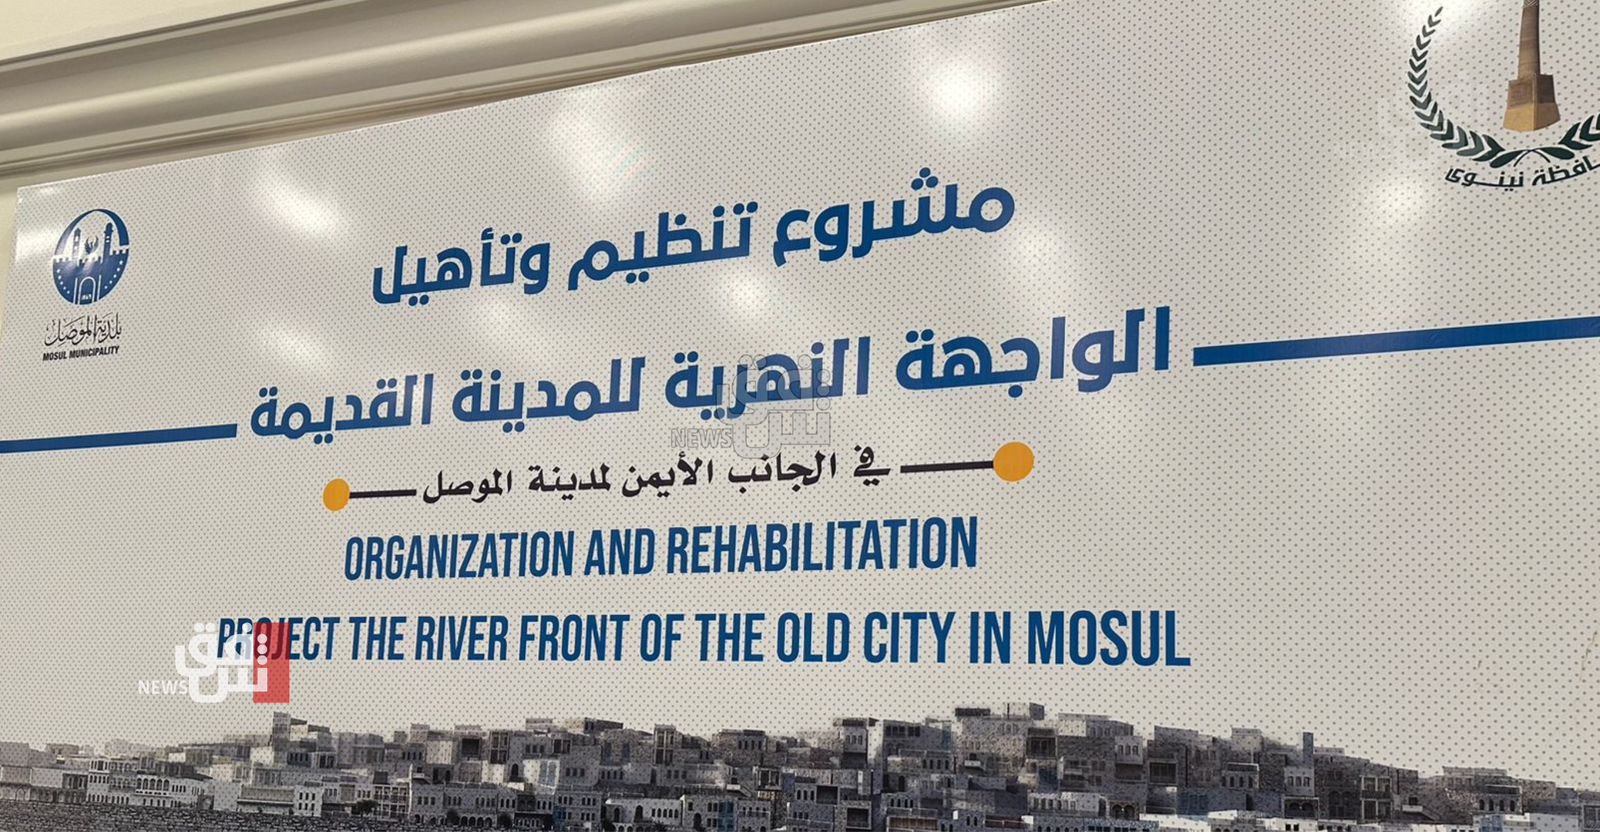 بكلفة 98 مليار دينار.. حكومة نينوى تطرح مشروع "الواجهة النهرية" في الموصل